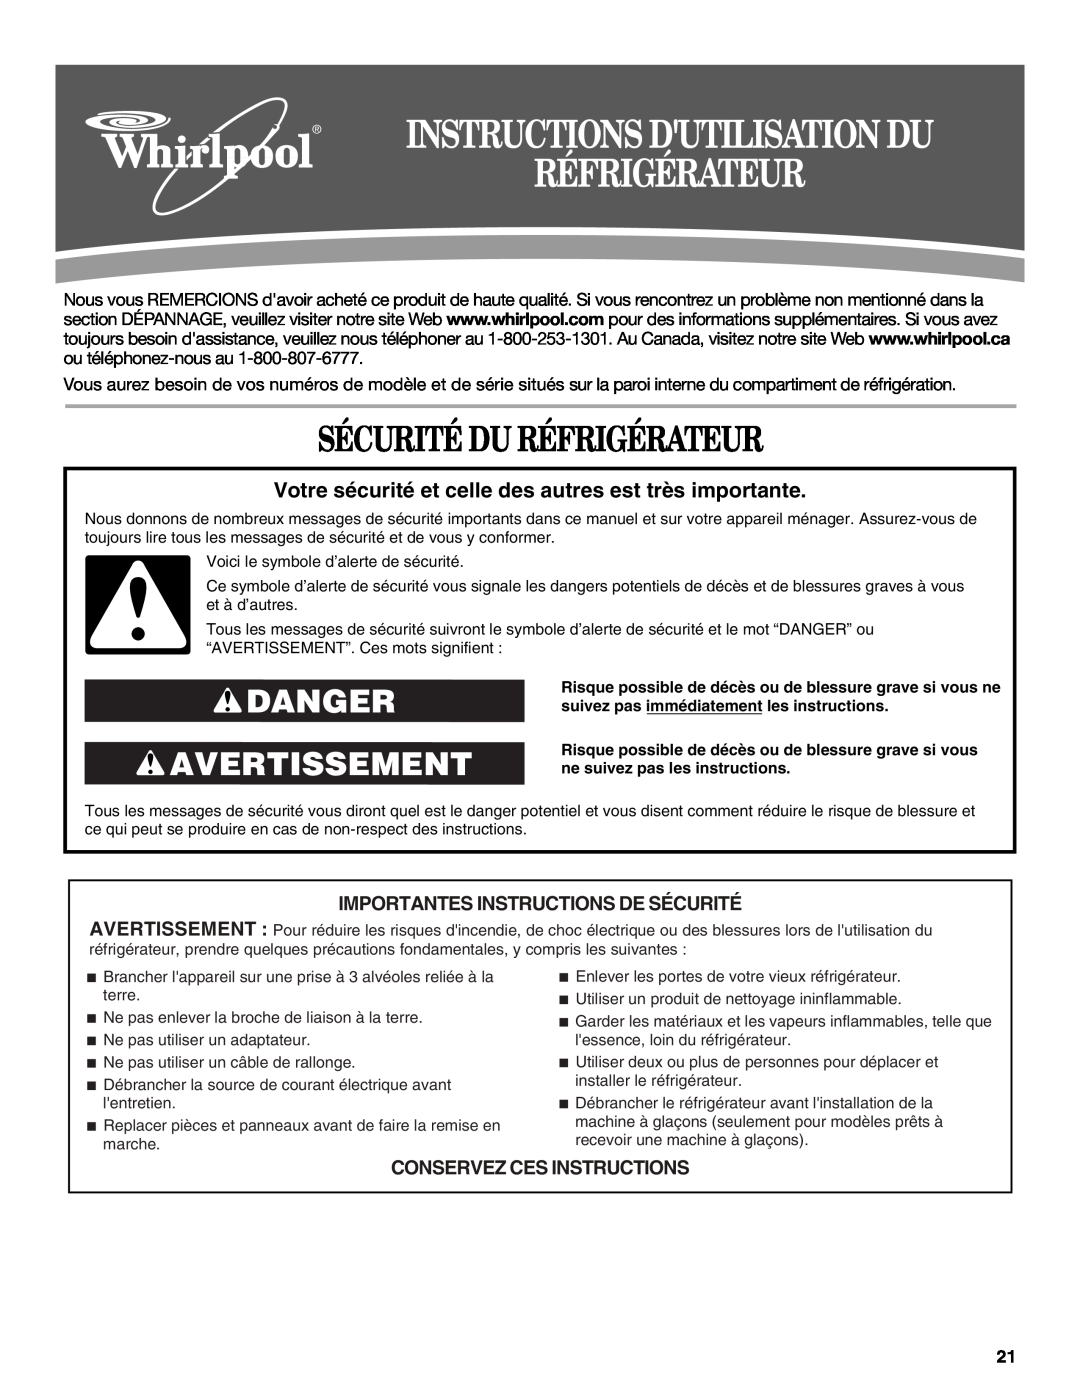 Whirlpool W10200284A, W10200283A Sécurité Du Réfrigérateur, Danger Avertissement, Importantes Instructions De Sécurité 